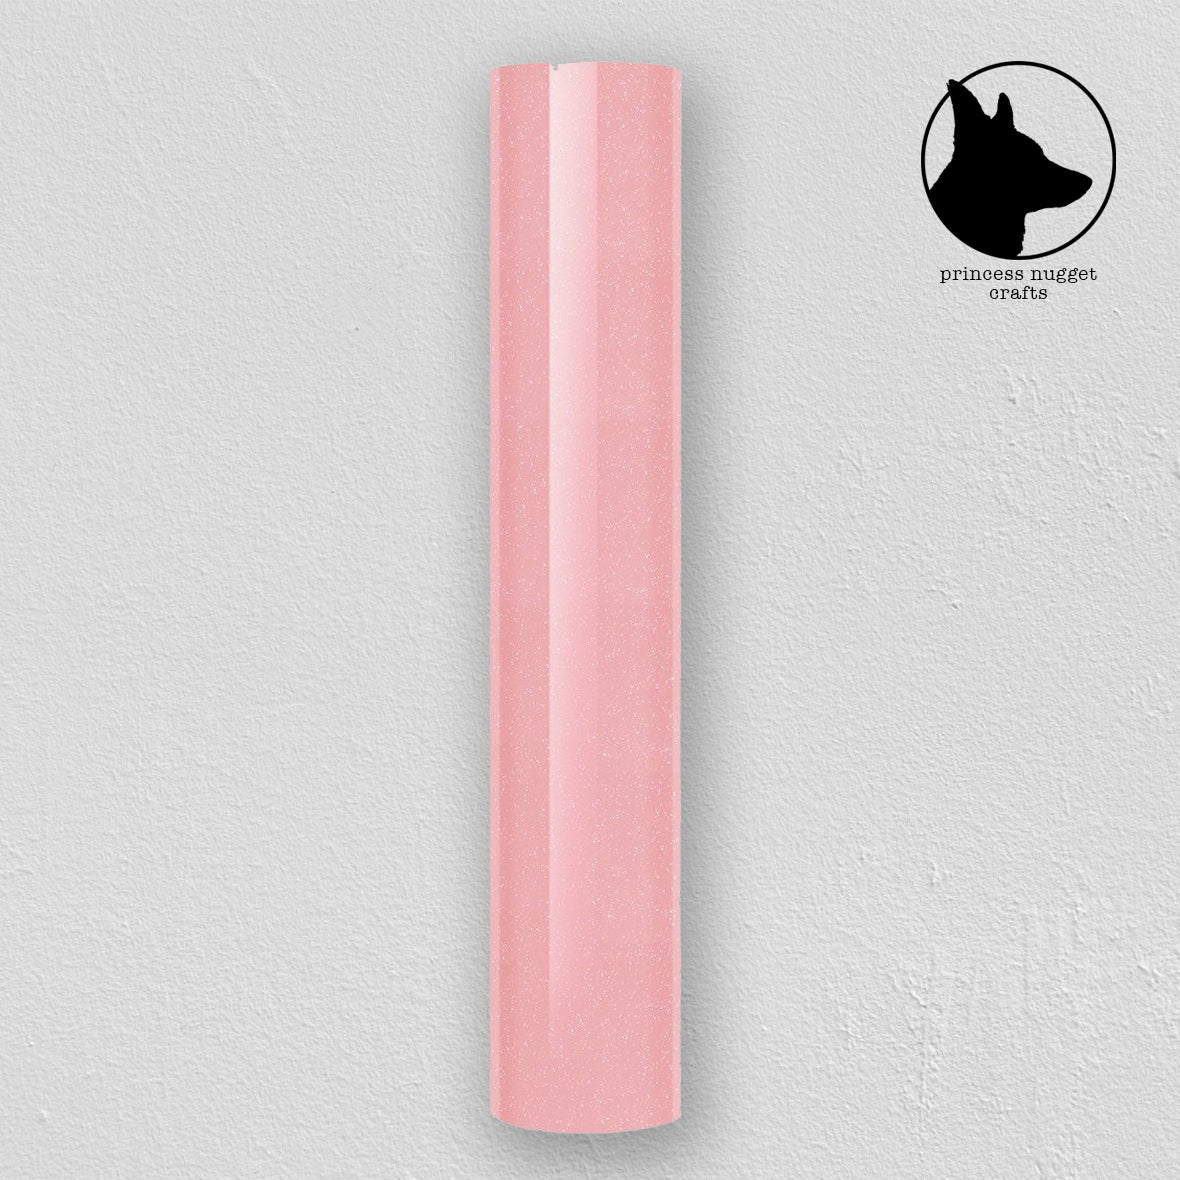 Shimmer Pink vinyle - Princess Nugget crafts